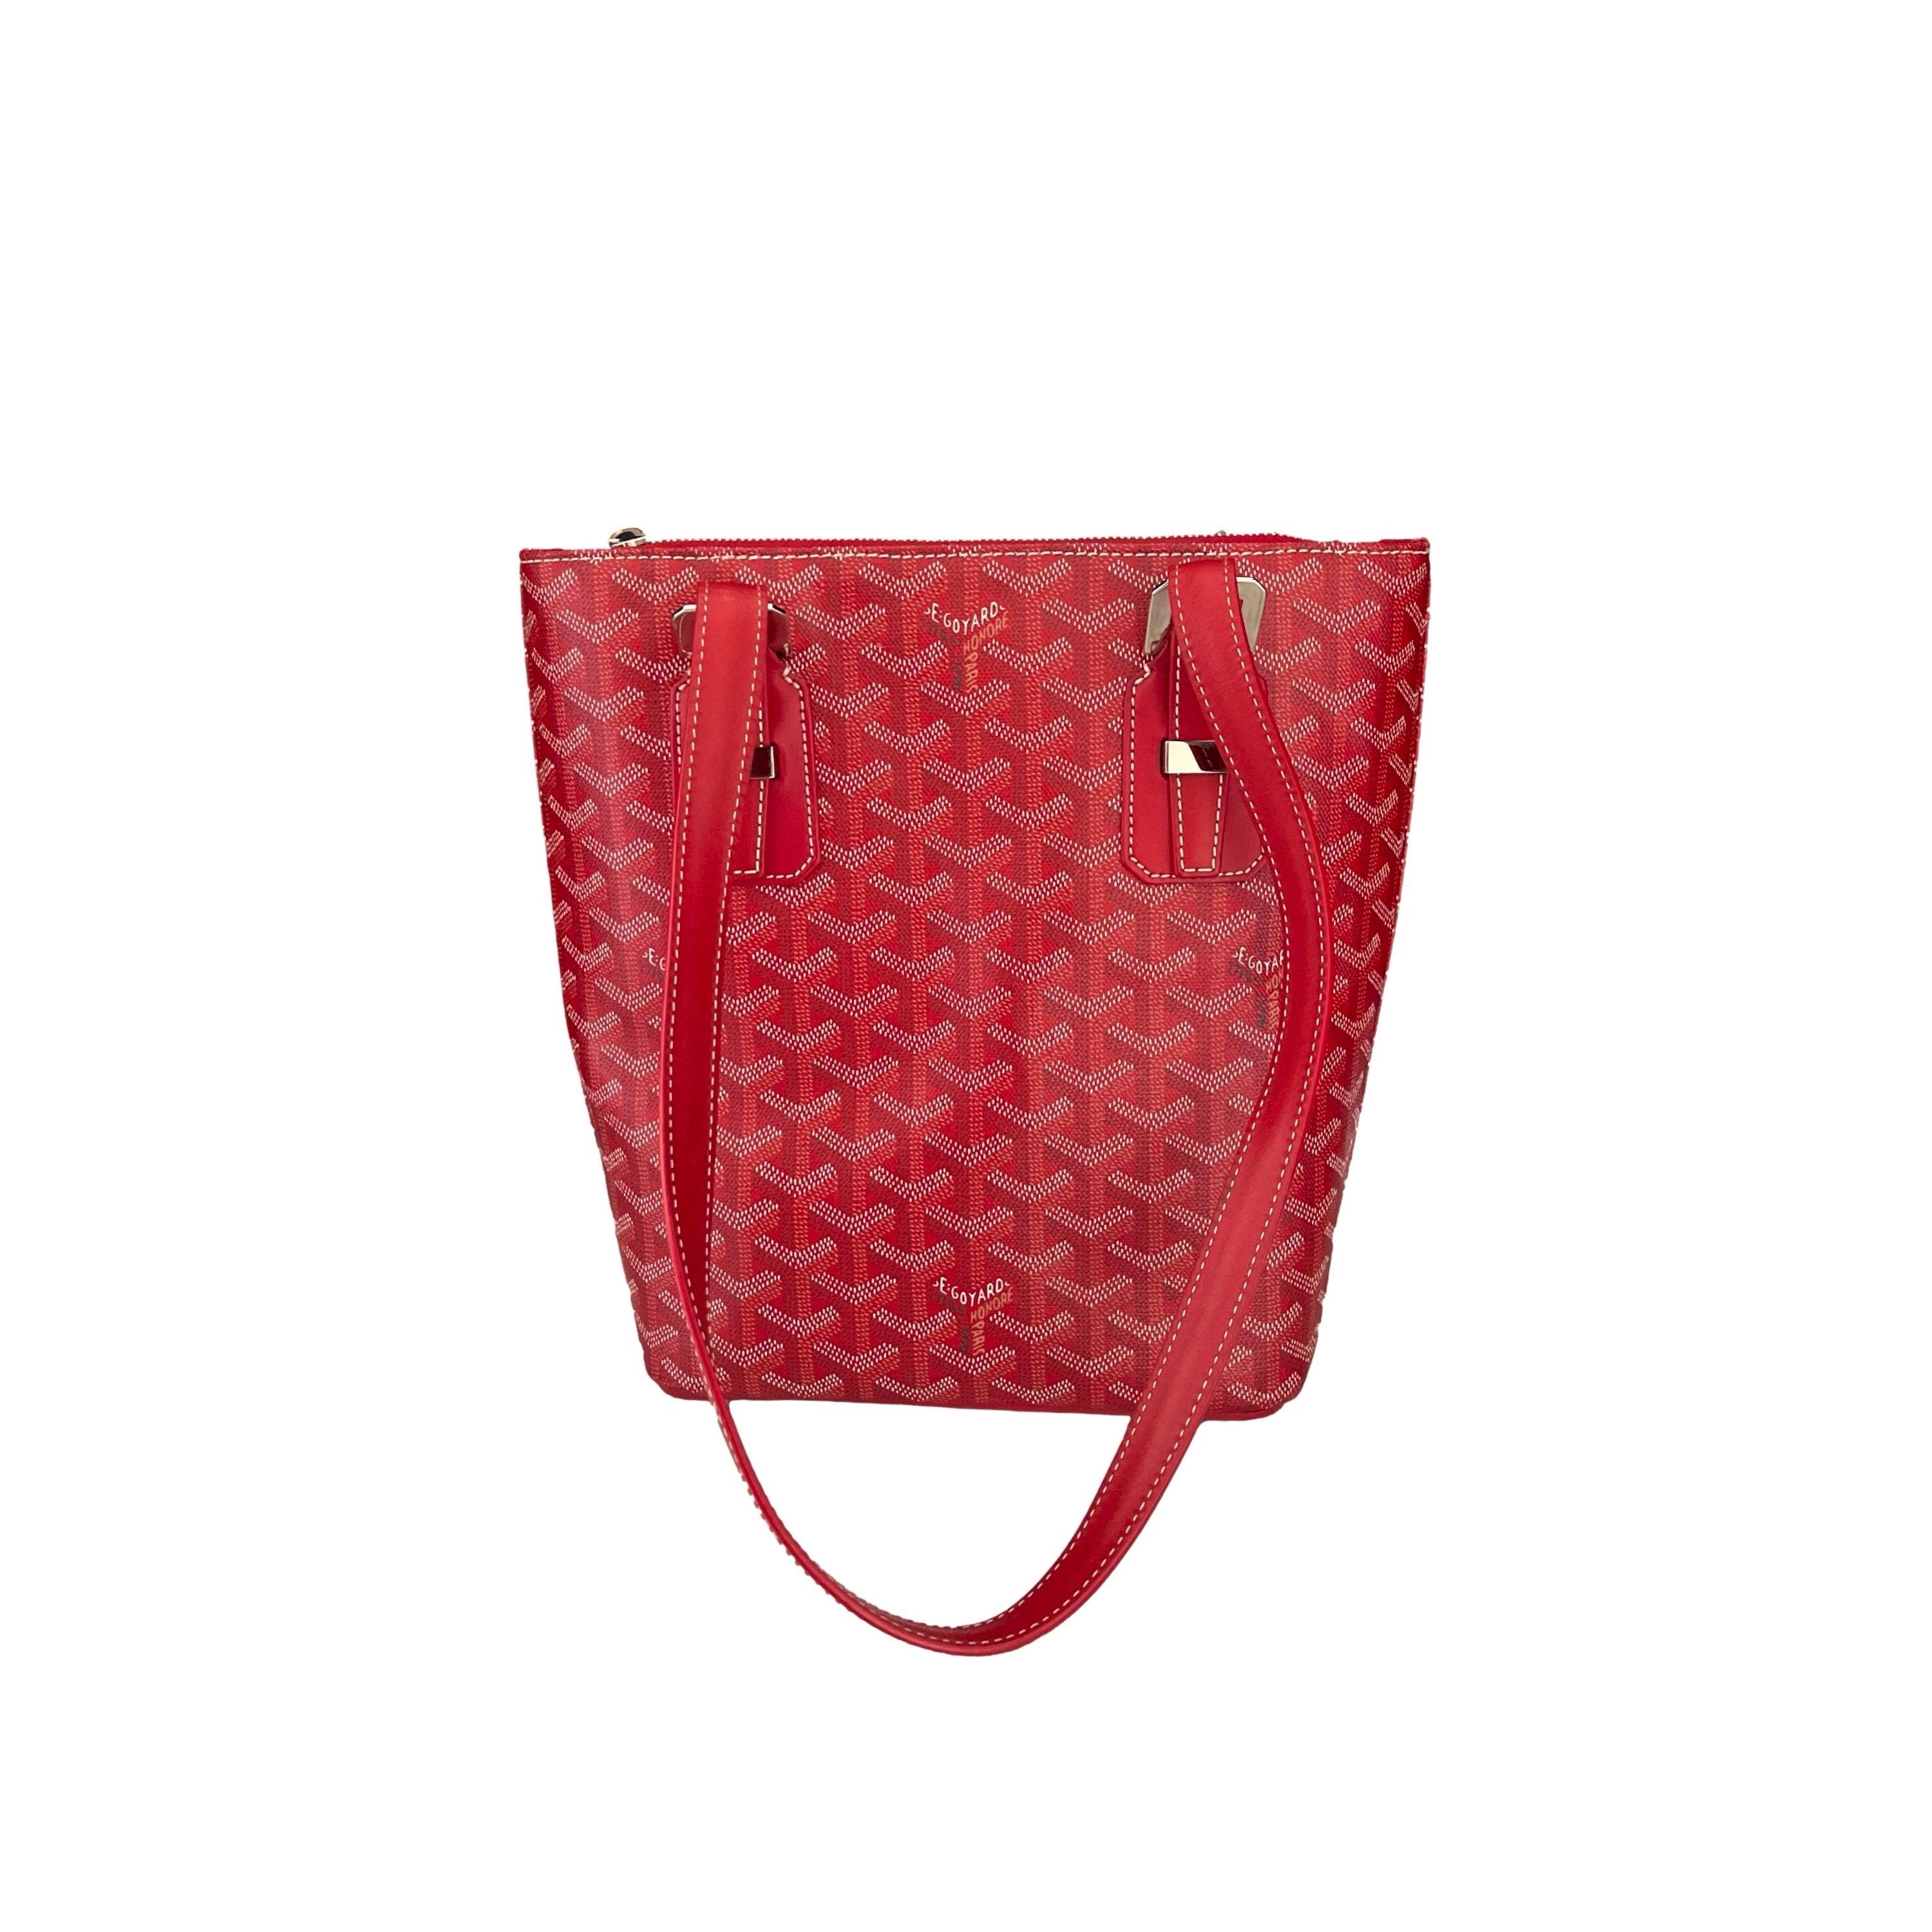 GOYARD Women's Hardy Bag in Red